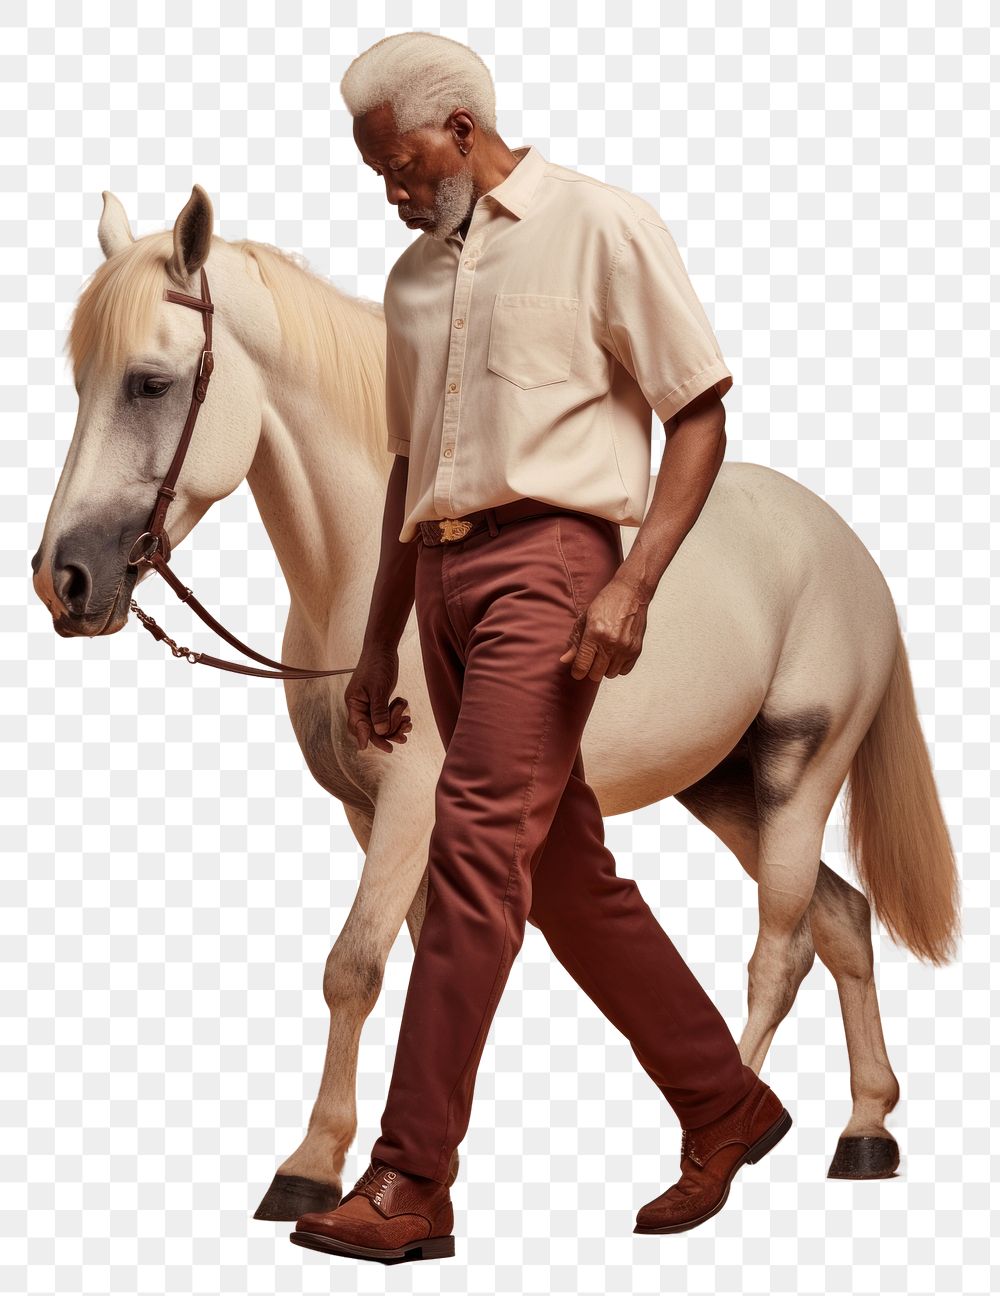 PNG Cream shirt and pant mockup horse mammal animal.